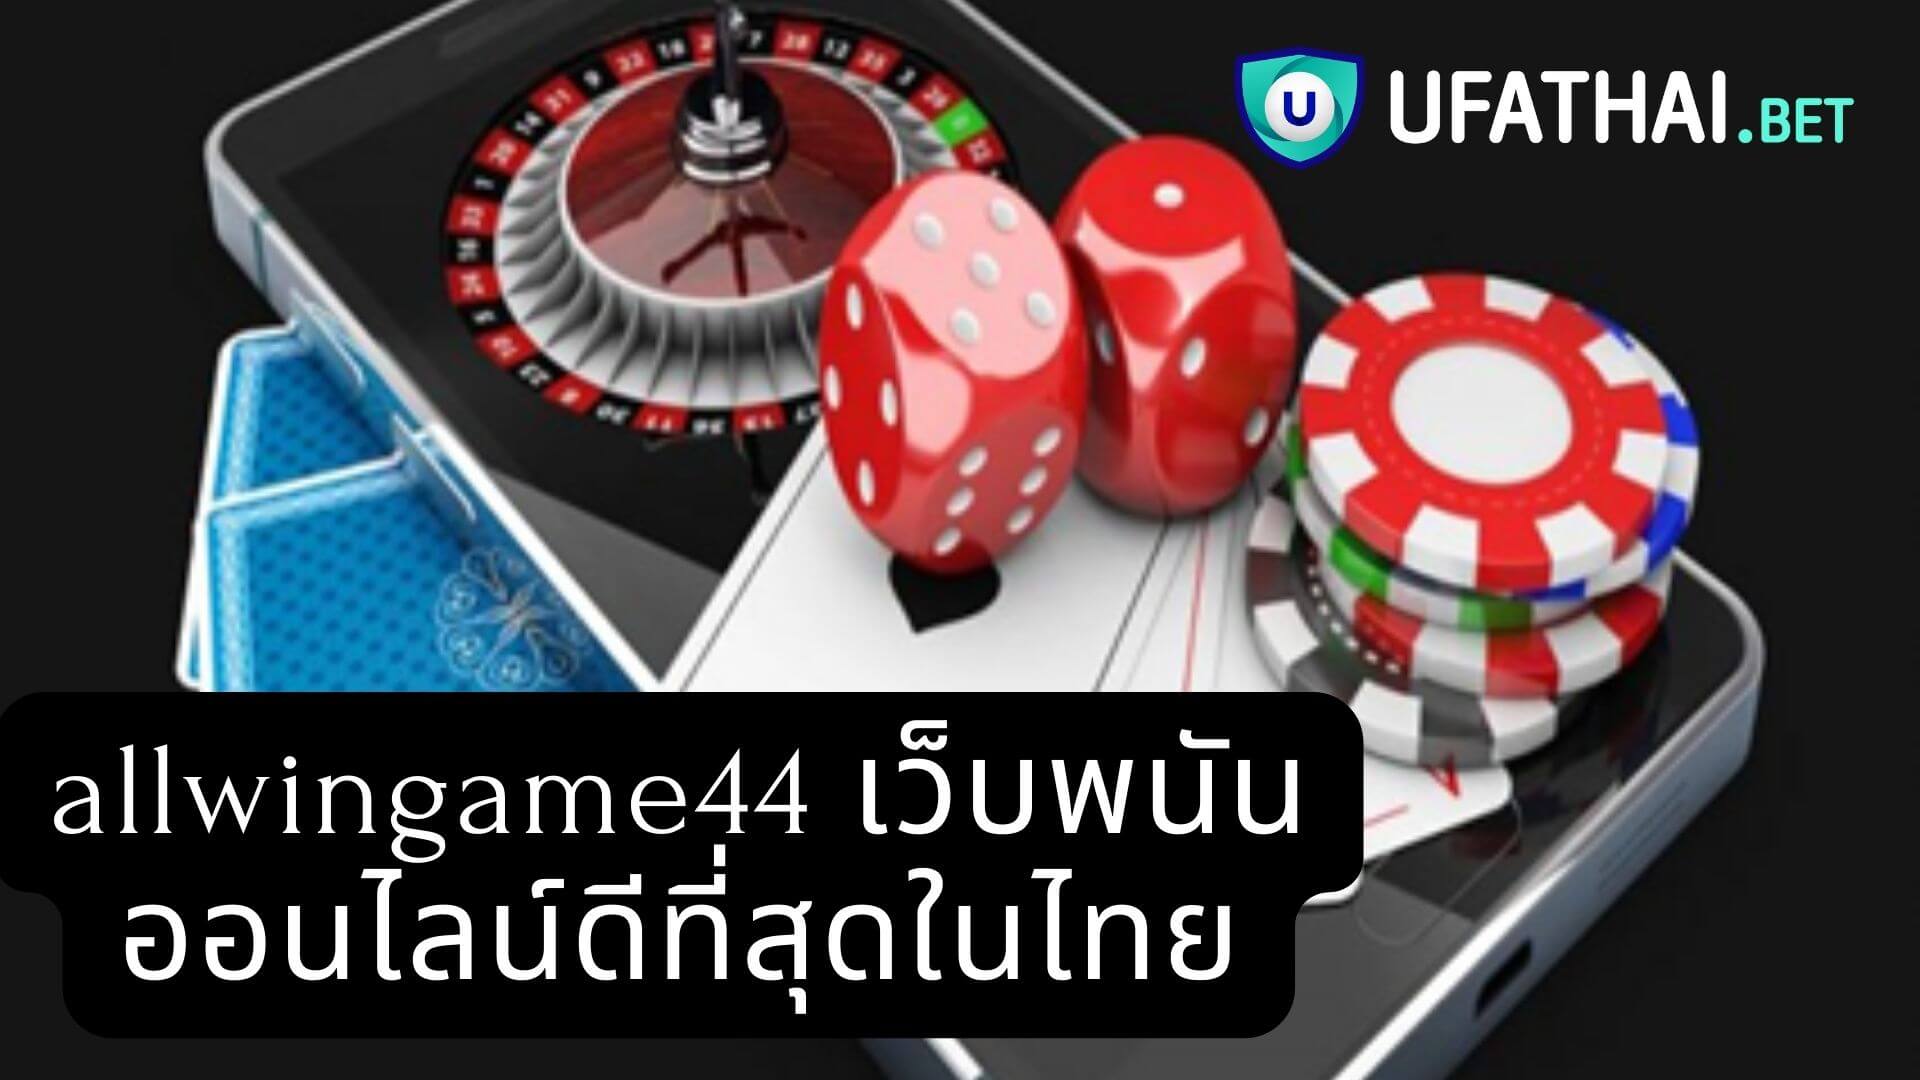 allwingame44 เว็บพนันออนไลน์ดีที่สุดในไทย